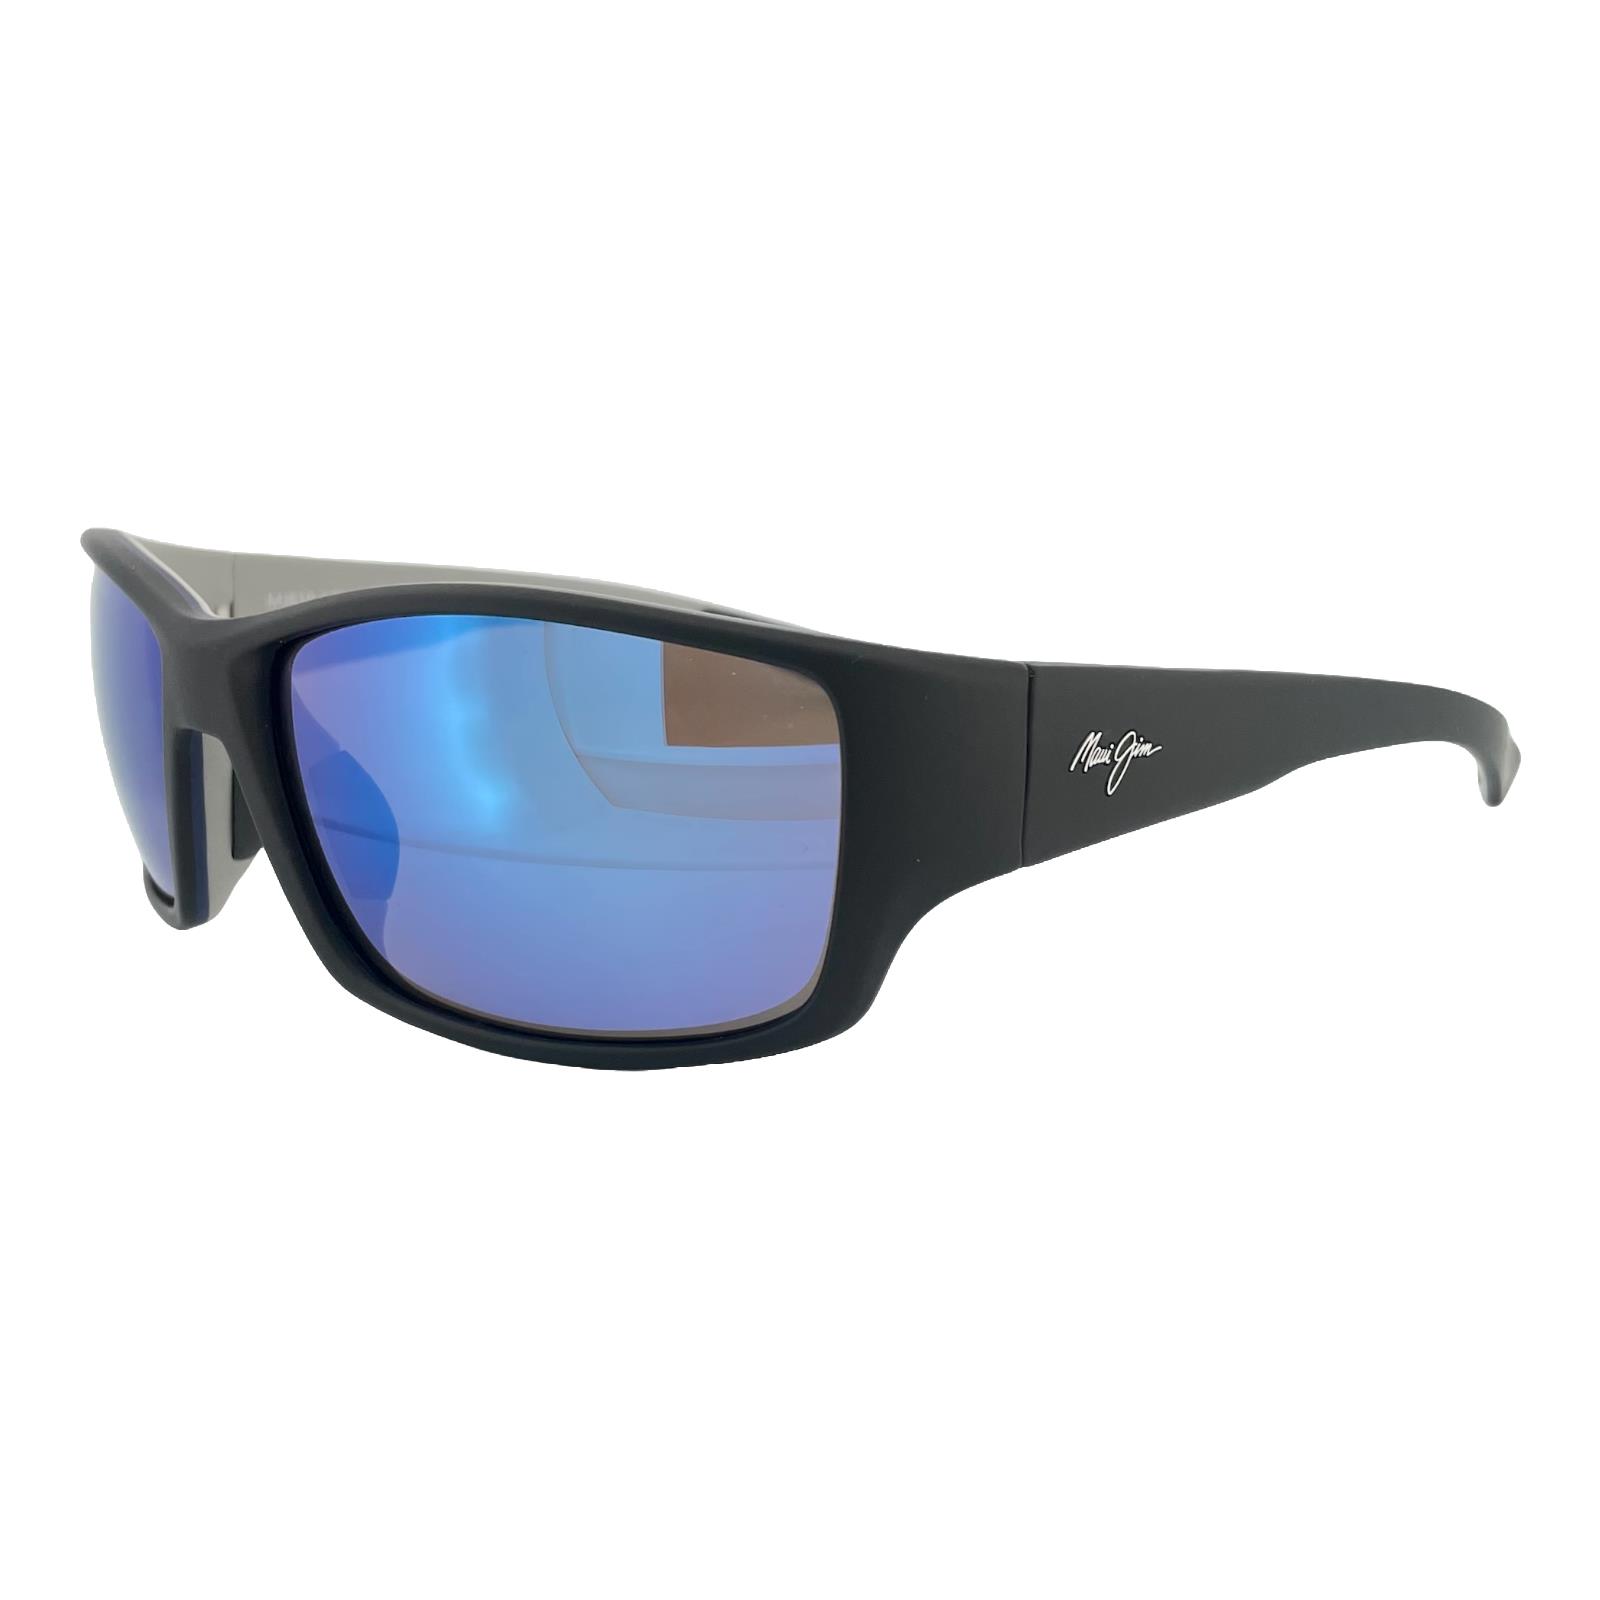 Maui Jim Sunglasses Local Kine B810-53B Matte Black Frame Blue Polarized Lens